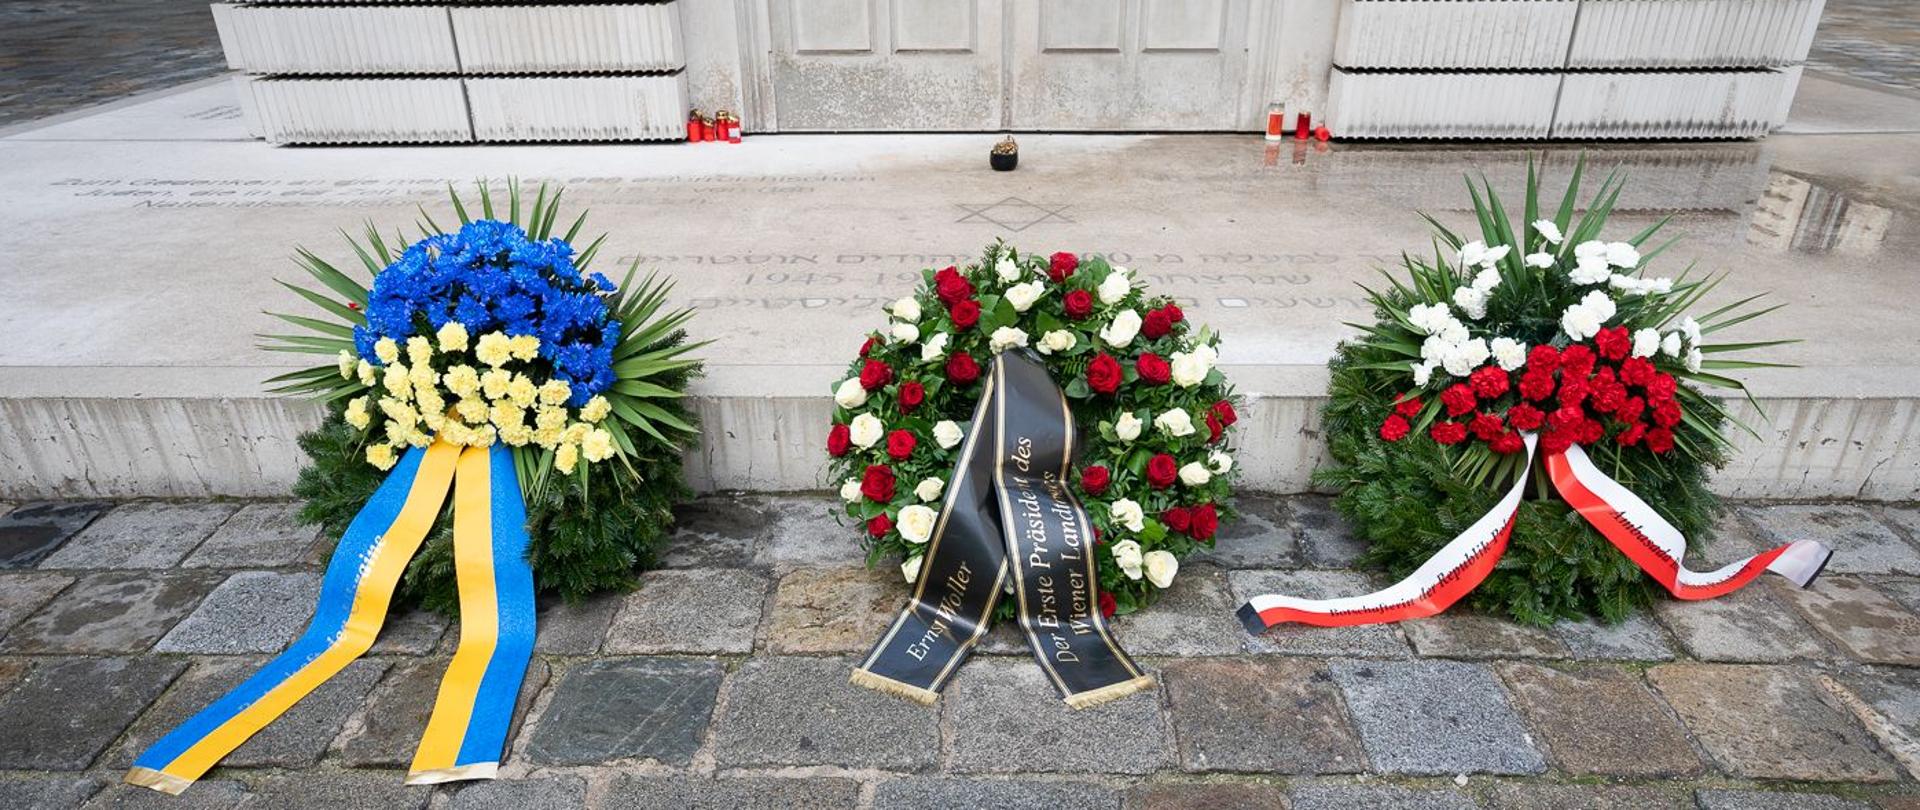 LTP Ernst Woller - internationaler Tag des Gedenkens an die Opfer des Holocaust - Mahnmal für die österreichischen jüdischen Opfer 